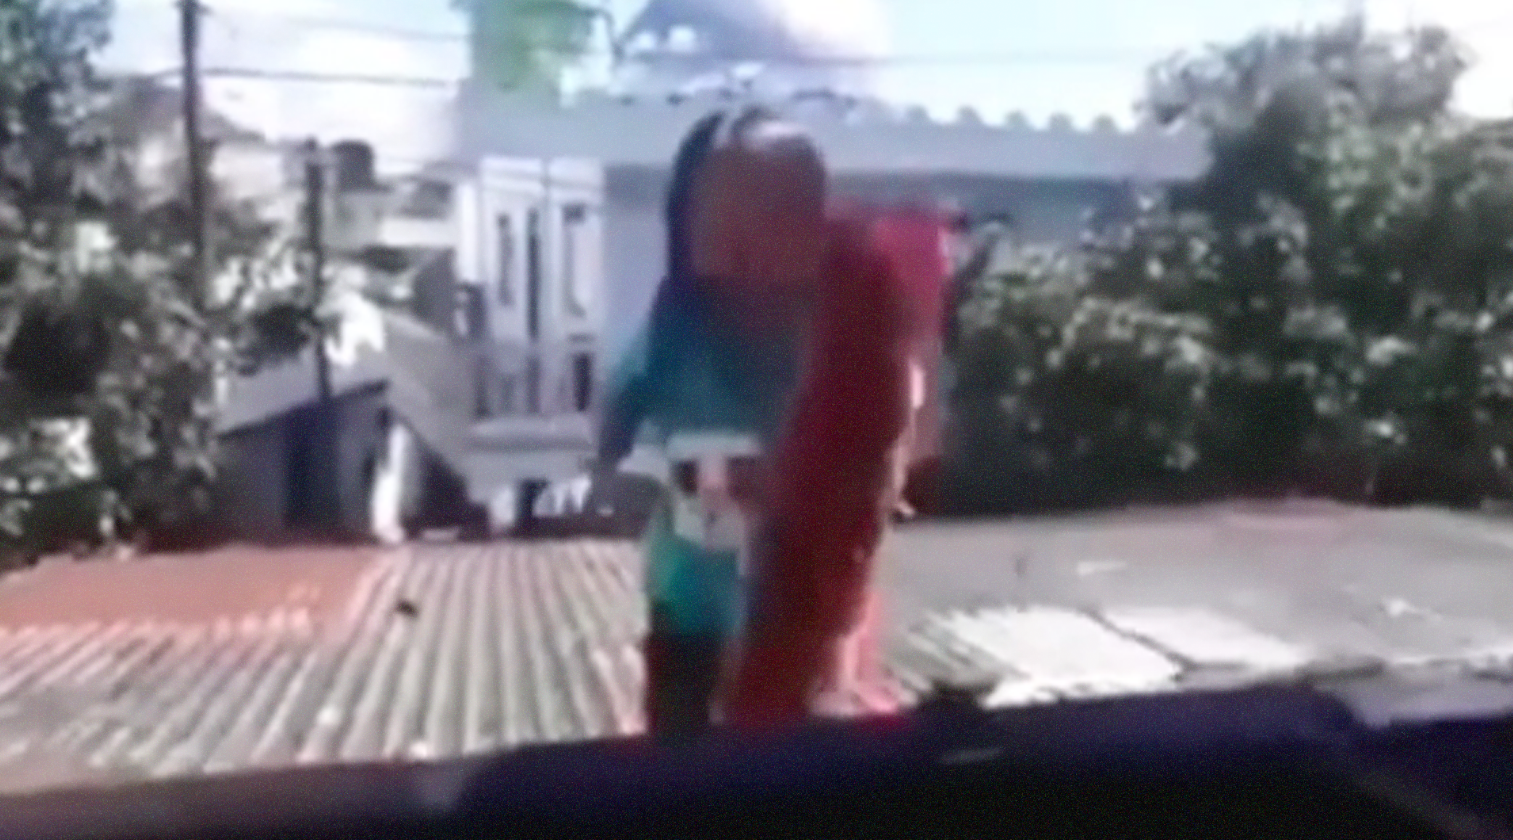 Bocah perempuan mengambil bantal di atap seng rumahnya. (Foto: Dok @fakta.indo)